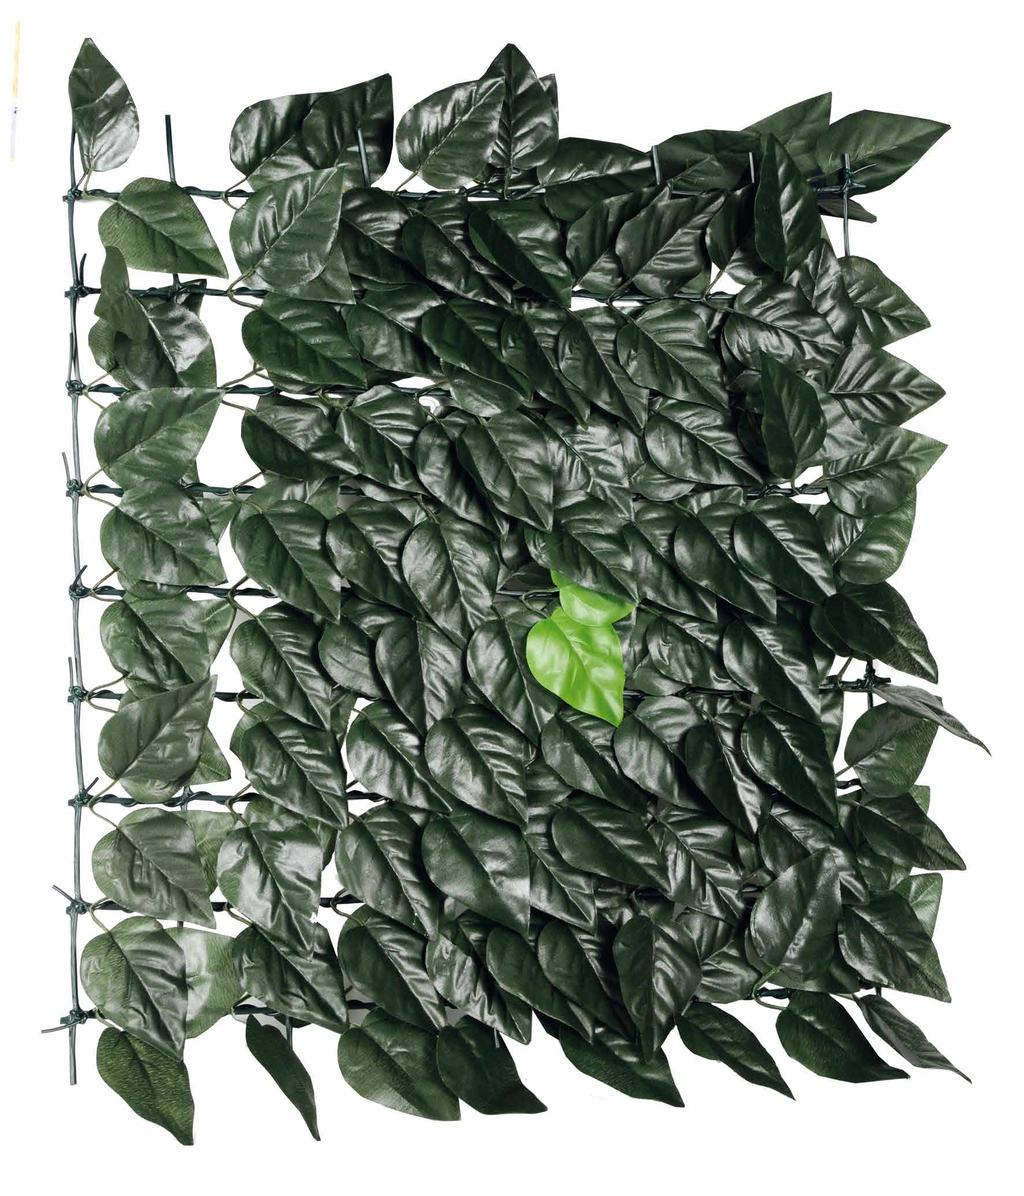 Ascot Schermatura totale composta da: foglie lauro in tessuto plasticato, col. verde scuro sostenute da una rete in plastica a maglia quadra.